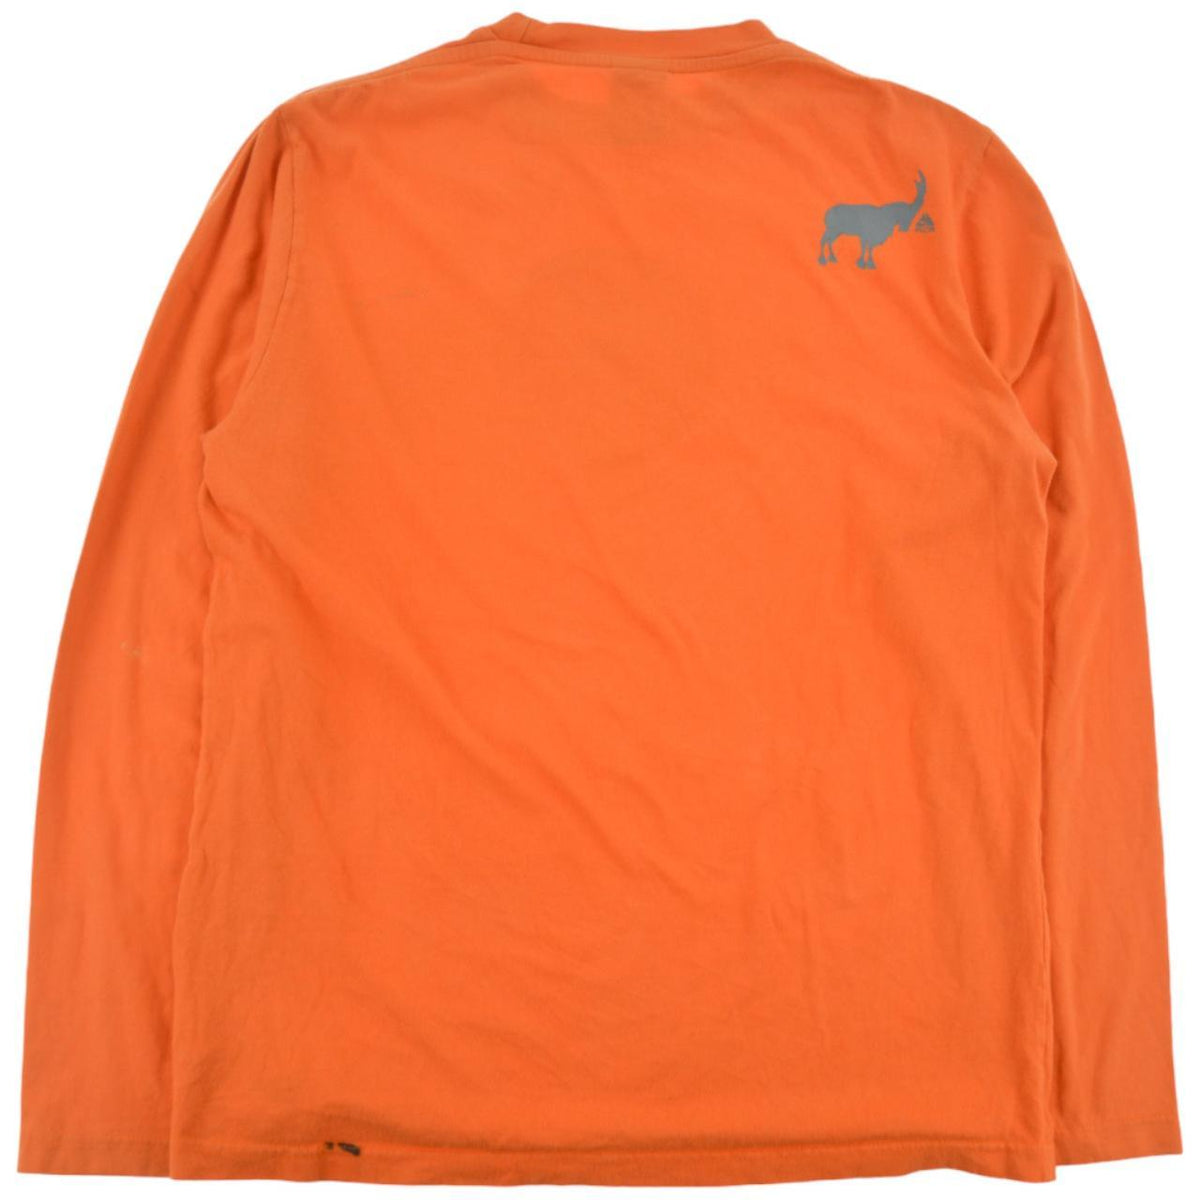 Vintage Nike ACG Long Sleeve T Shirt Size M